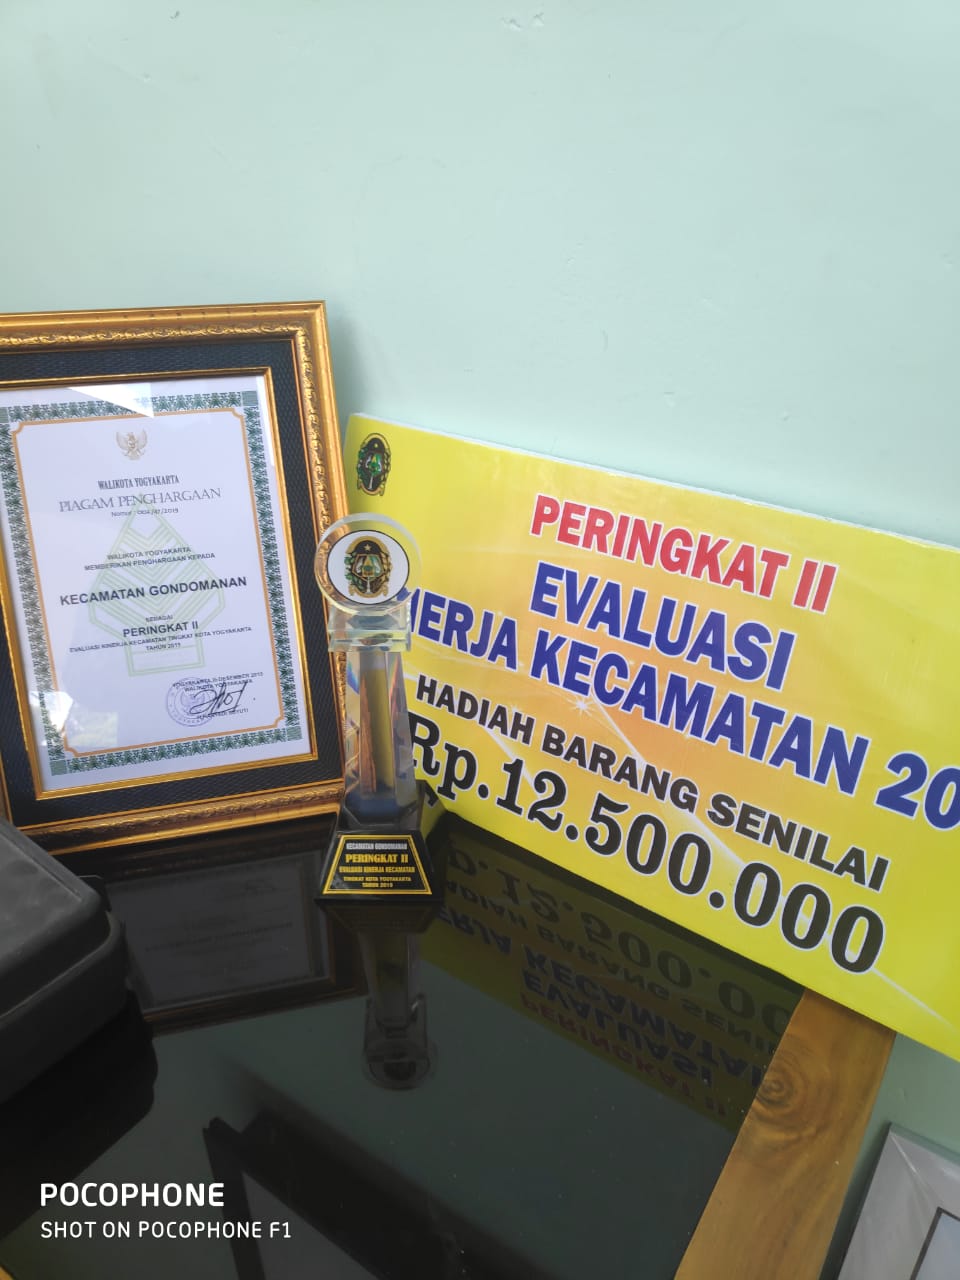 Dalam rangka Lomba Evaluasi Kinerja SKPD , Kecamatan Gondomanan meraih peringkat ke-2 se Kota Yogyakarta